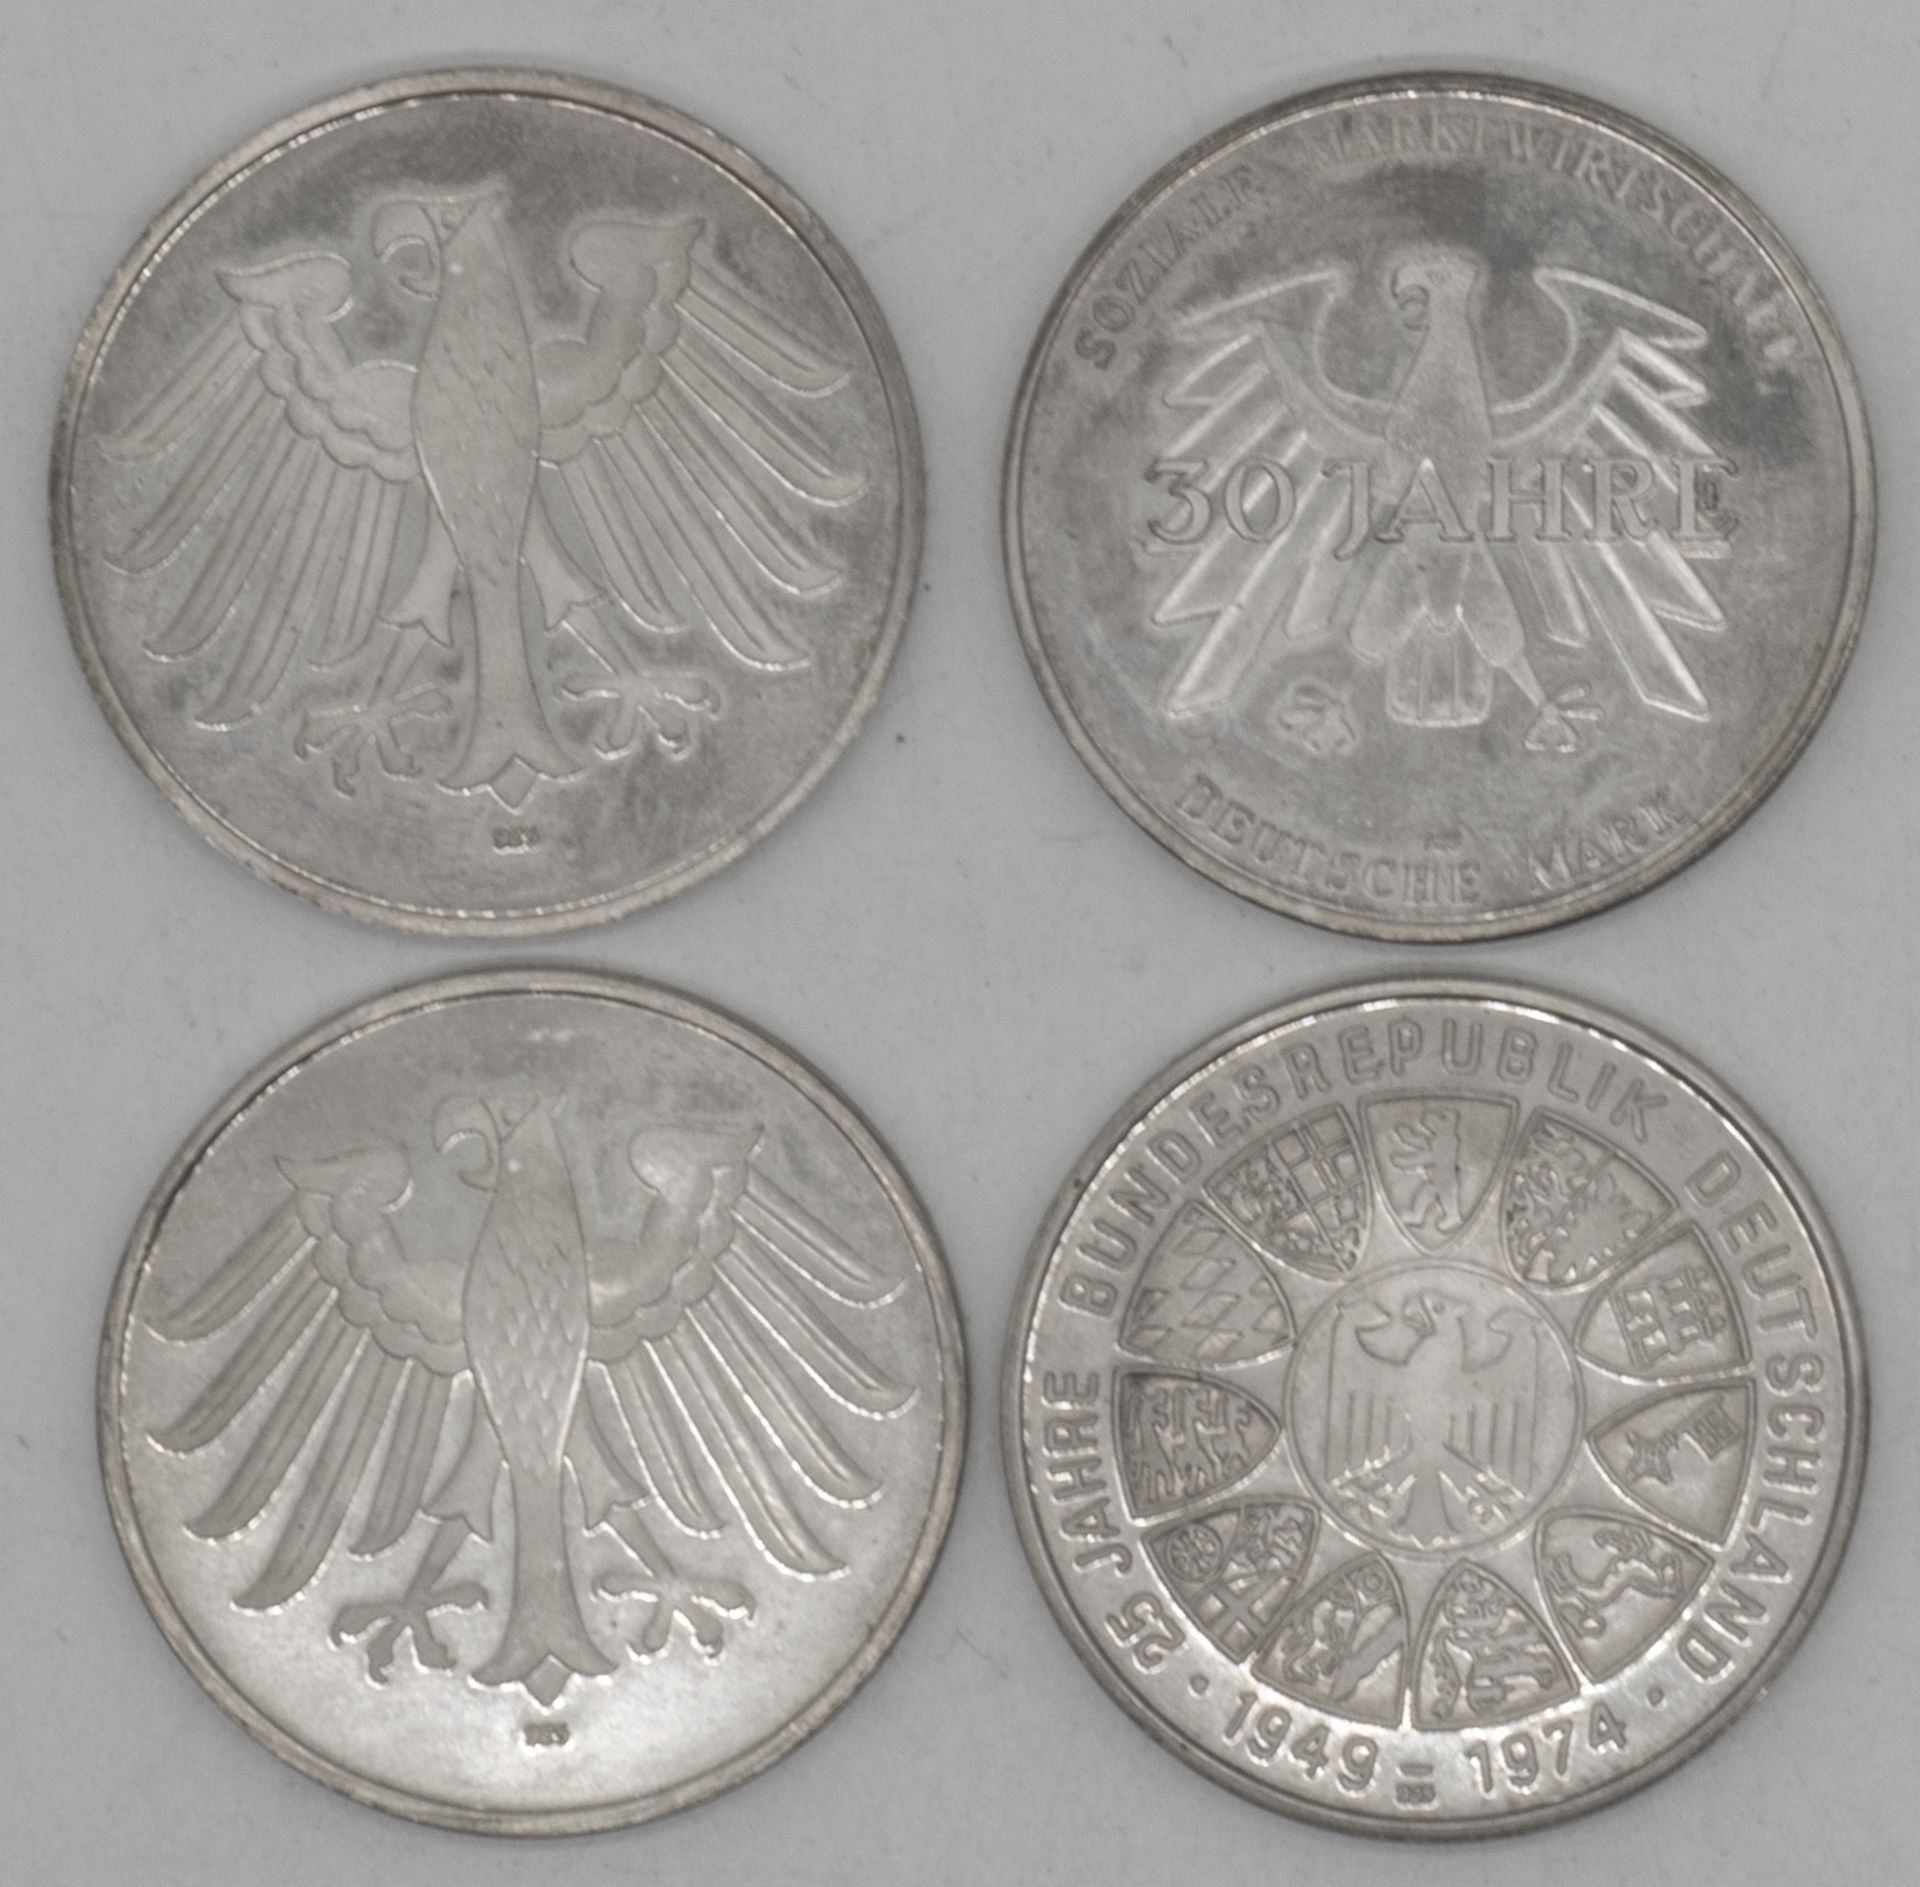 4 Silber Medaillen, BRD, 925er Punze. Theodor Heuss, Ludwig Erhard, 2x Walter Scheel. - Bild 2 aus 2